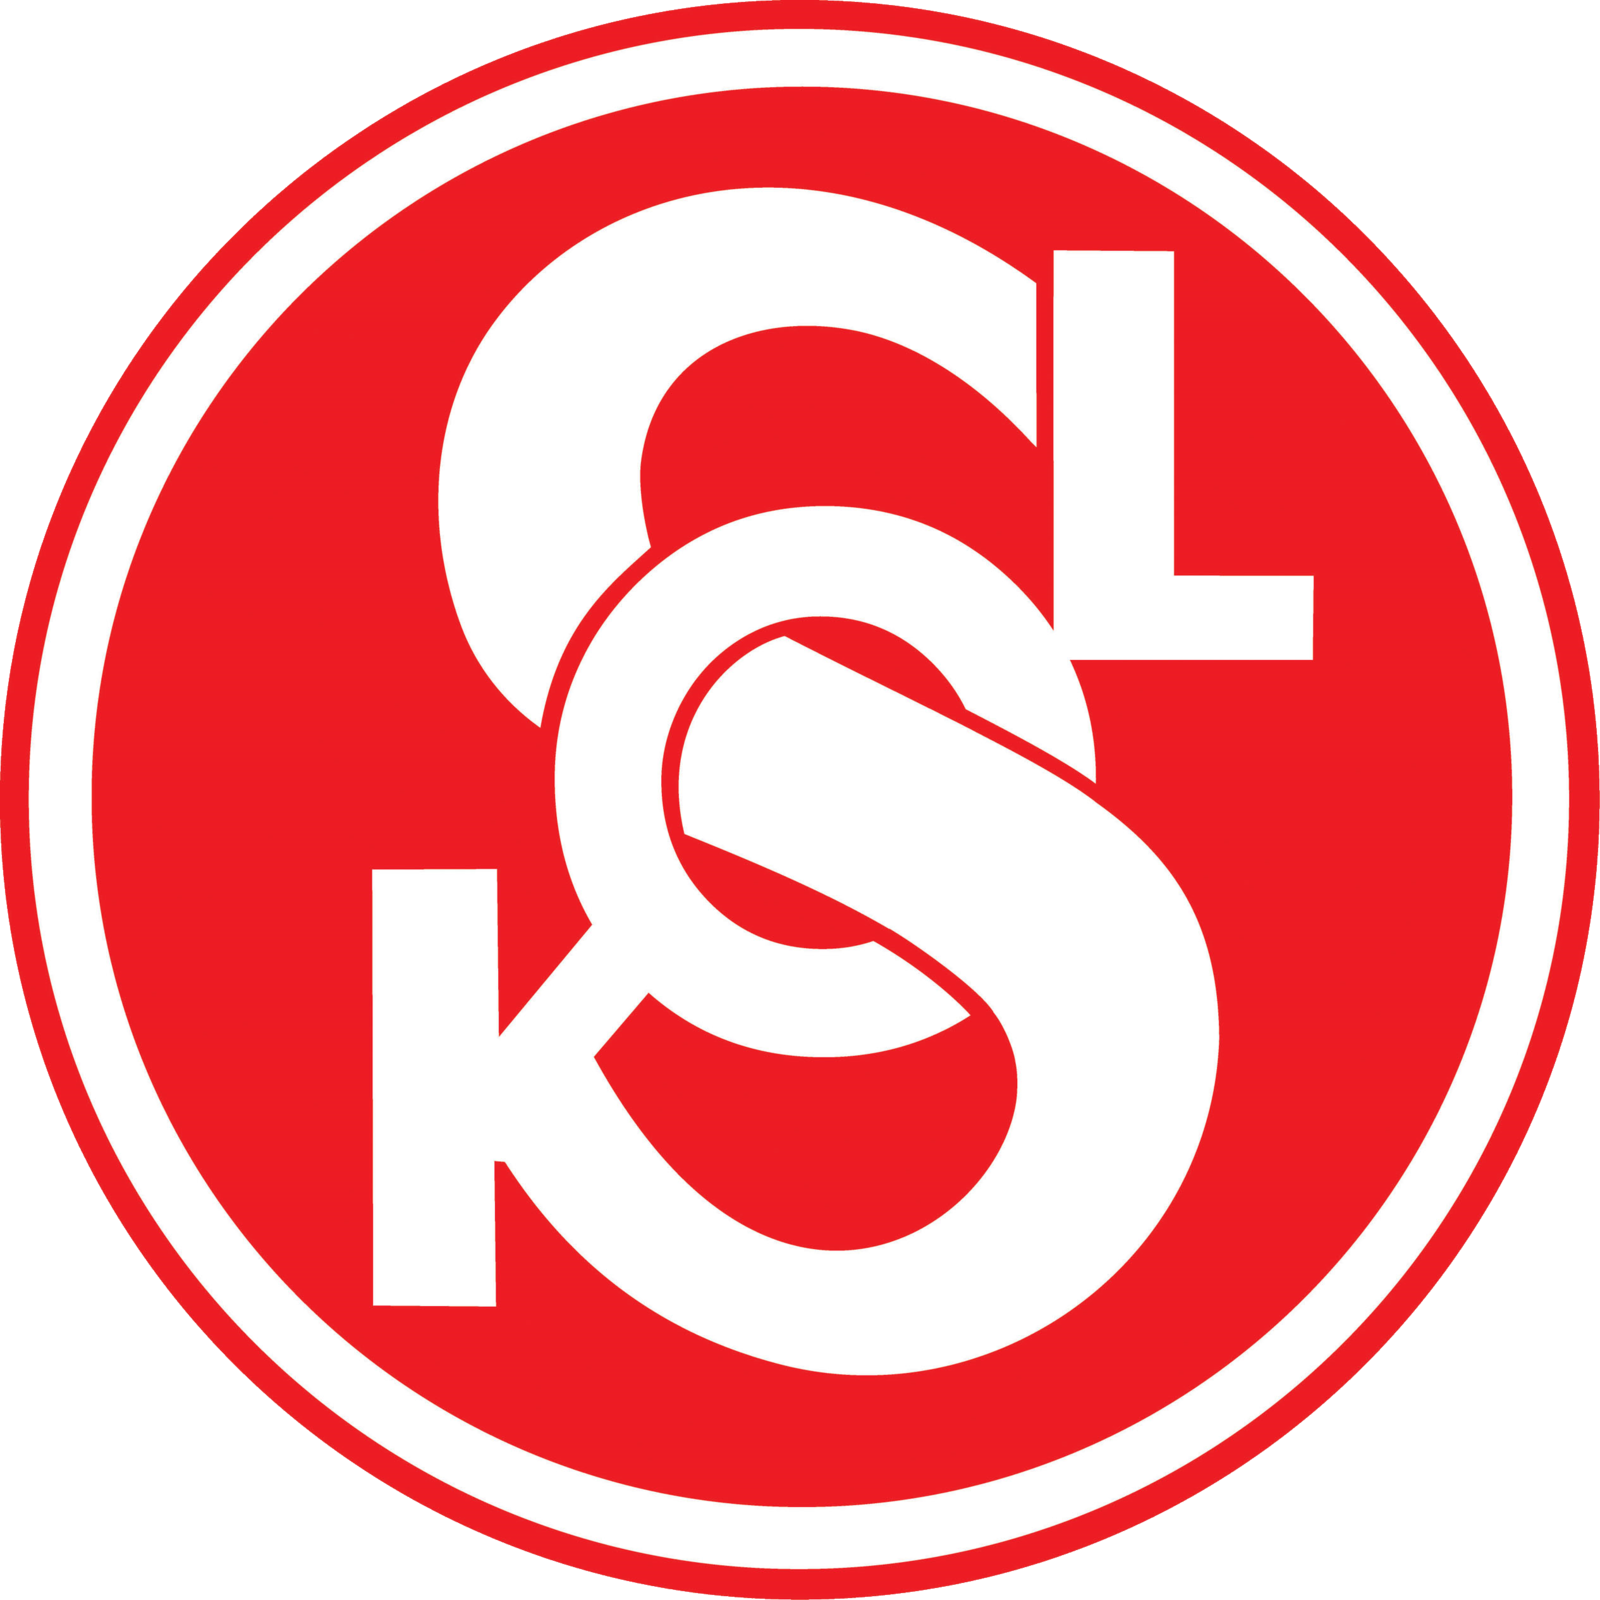 logo-sokol.png